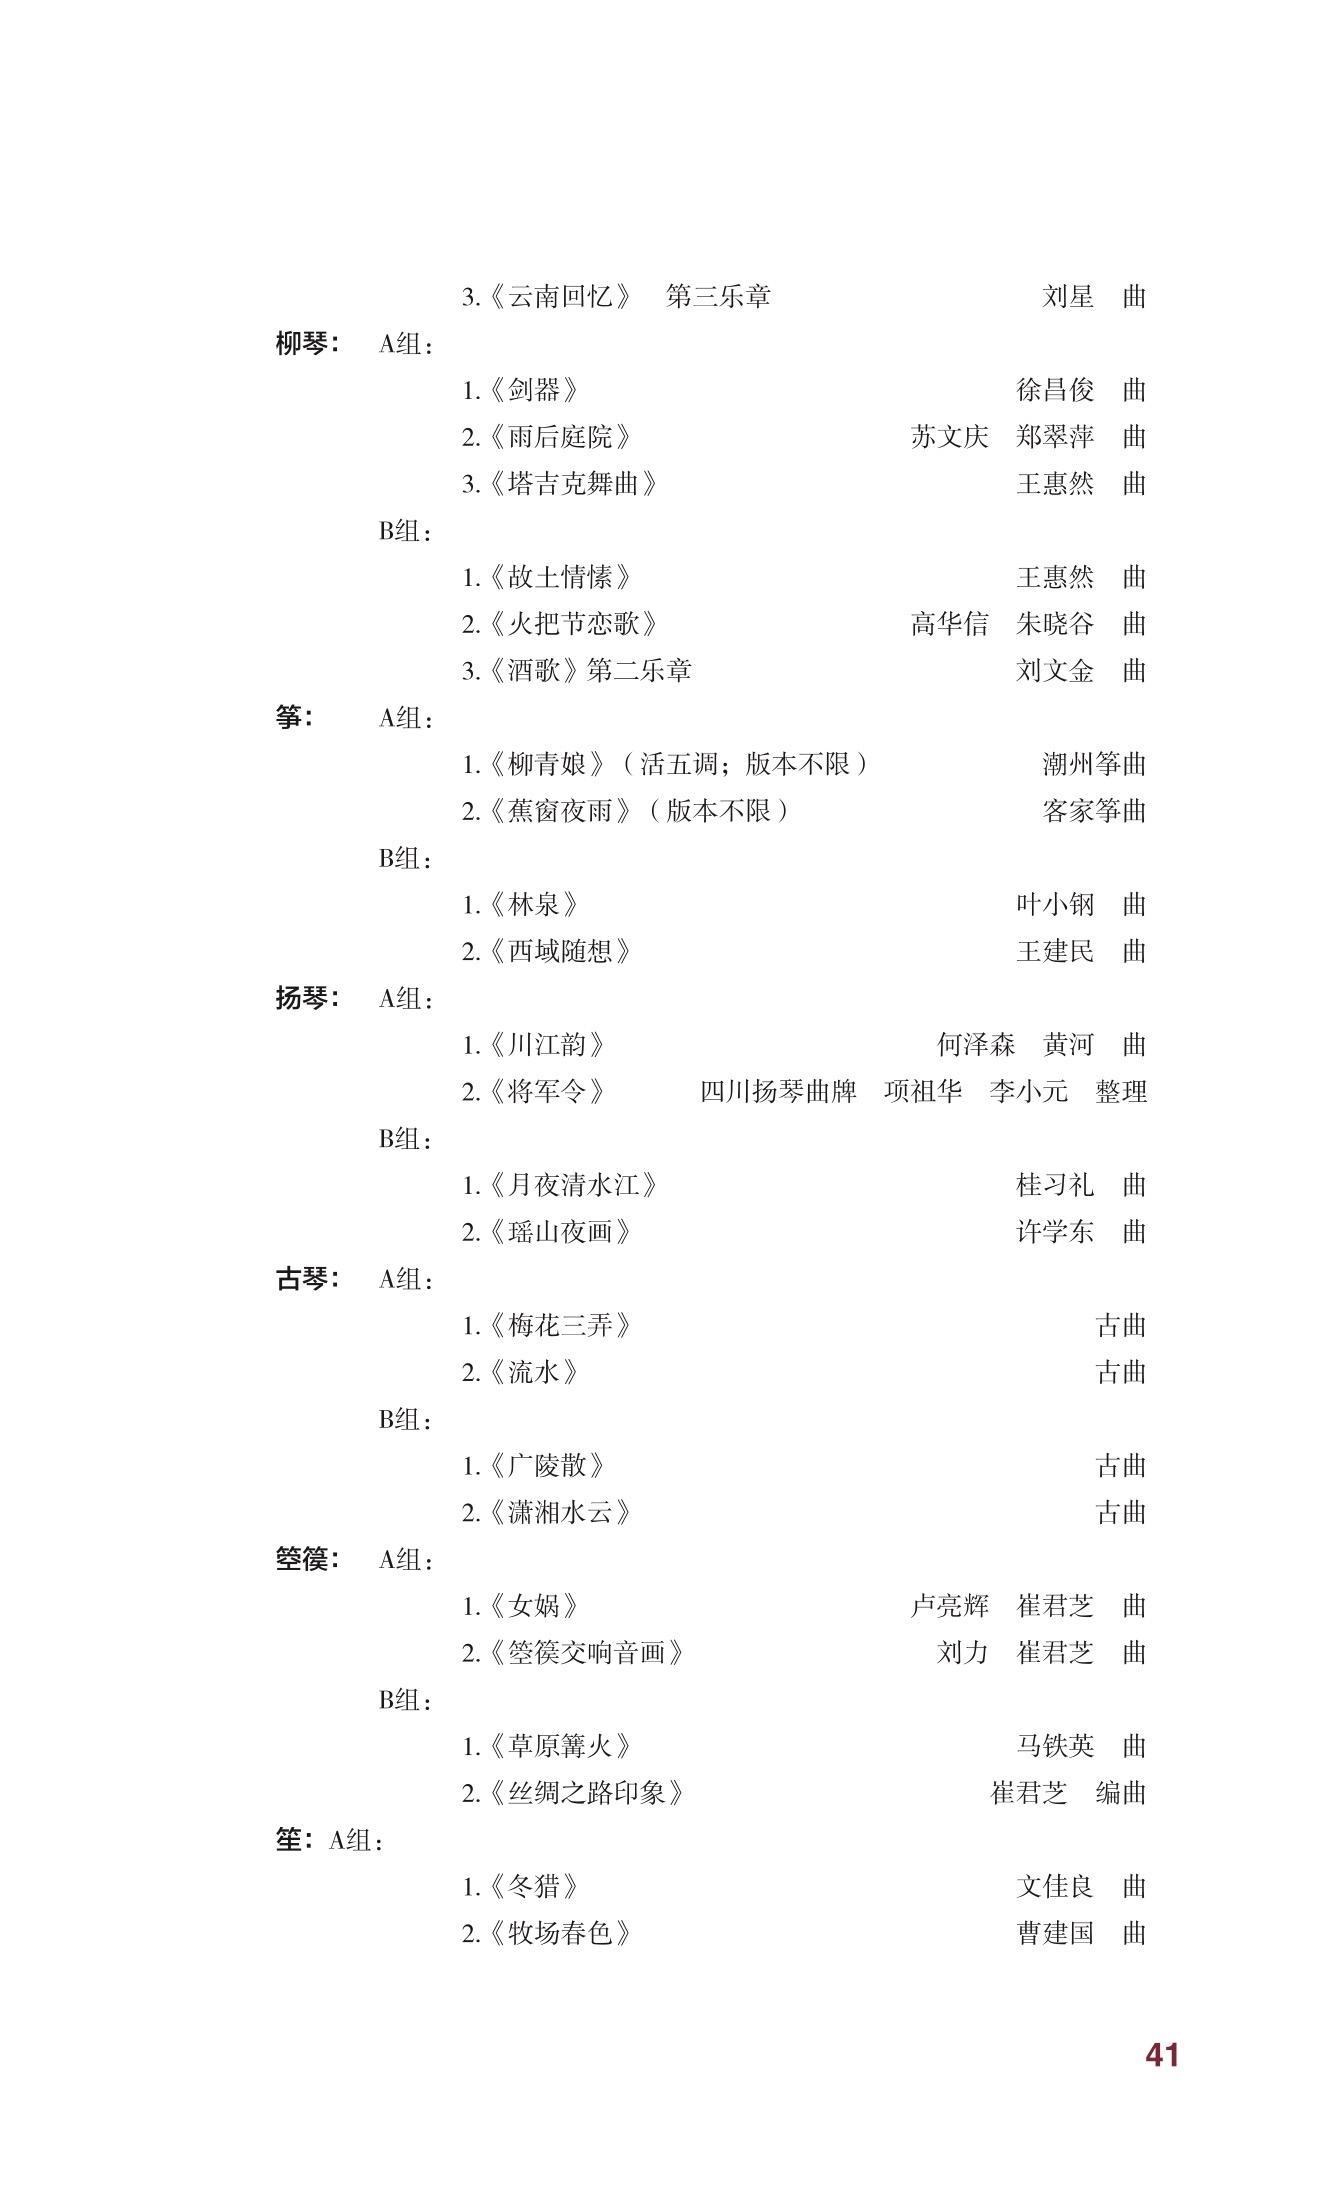 中央音乐学院2018年本科招生简章-page43 1:4:2018.jpeg